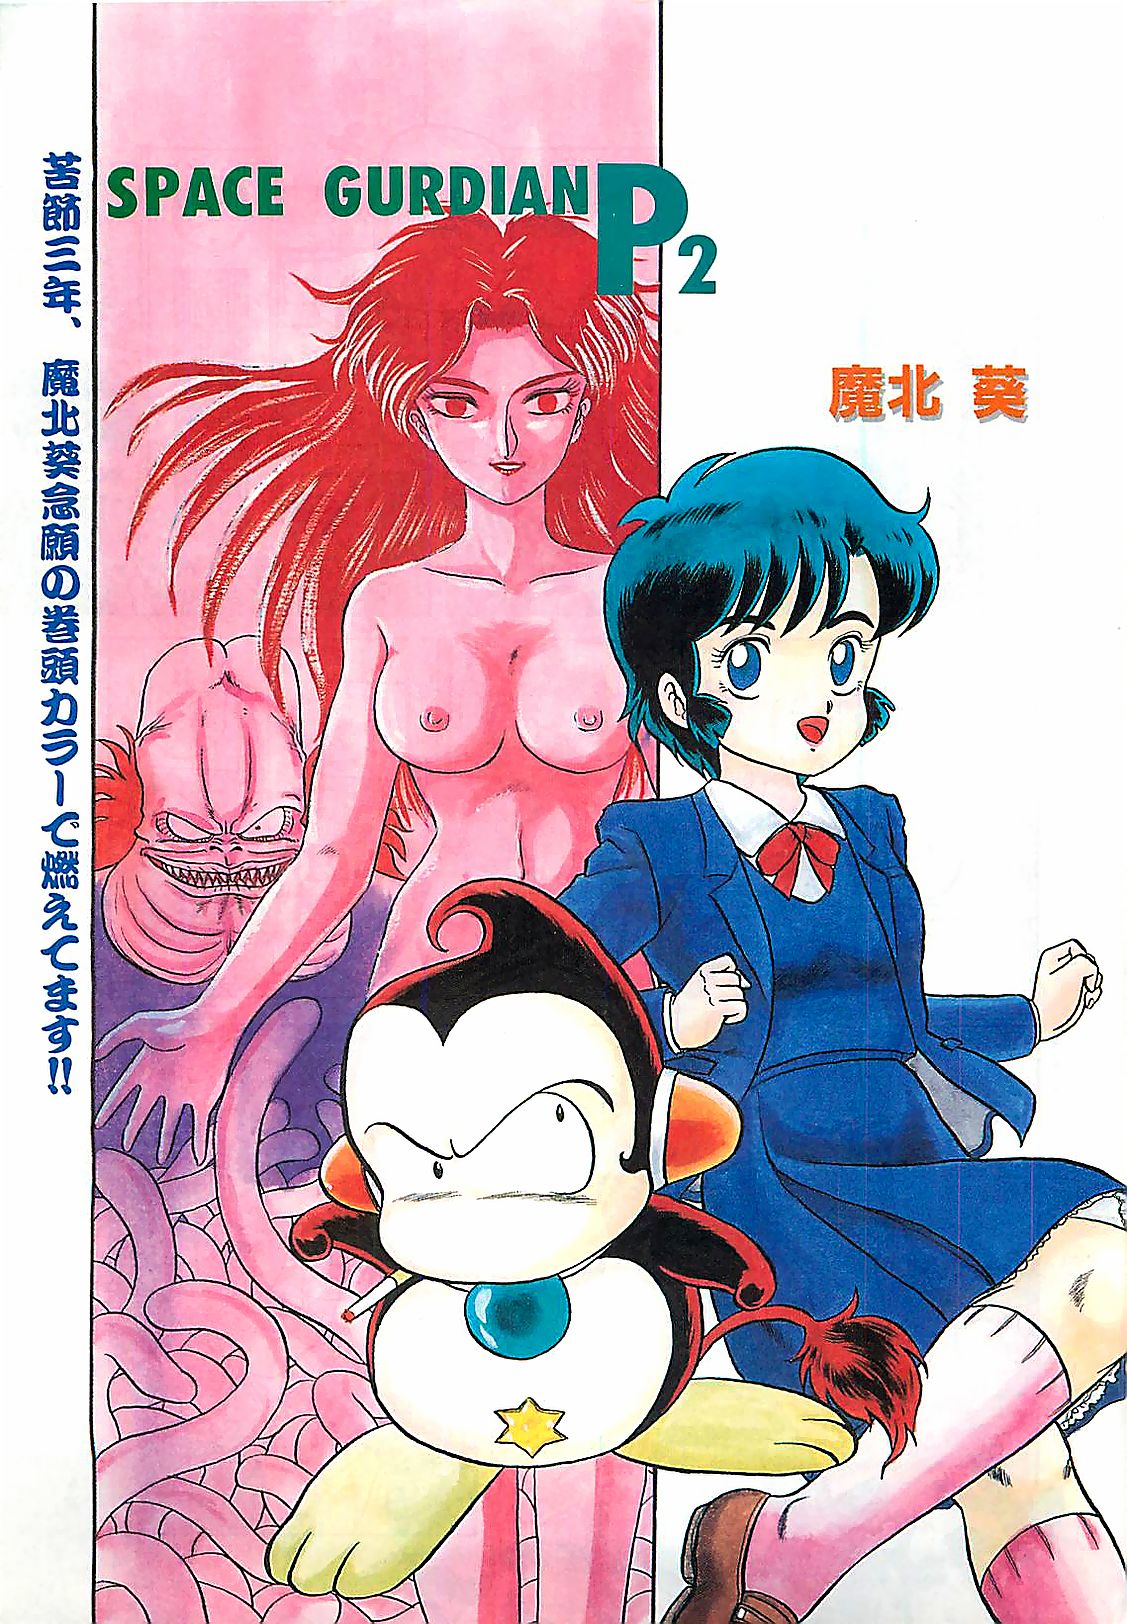 COMIC Manga Hot Milk 1992-04 (雑誌) COMIC 漫画ホットミルク 1992年04月号